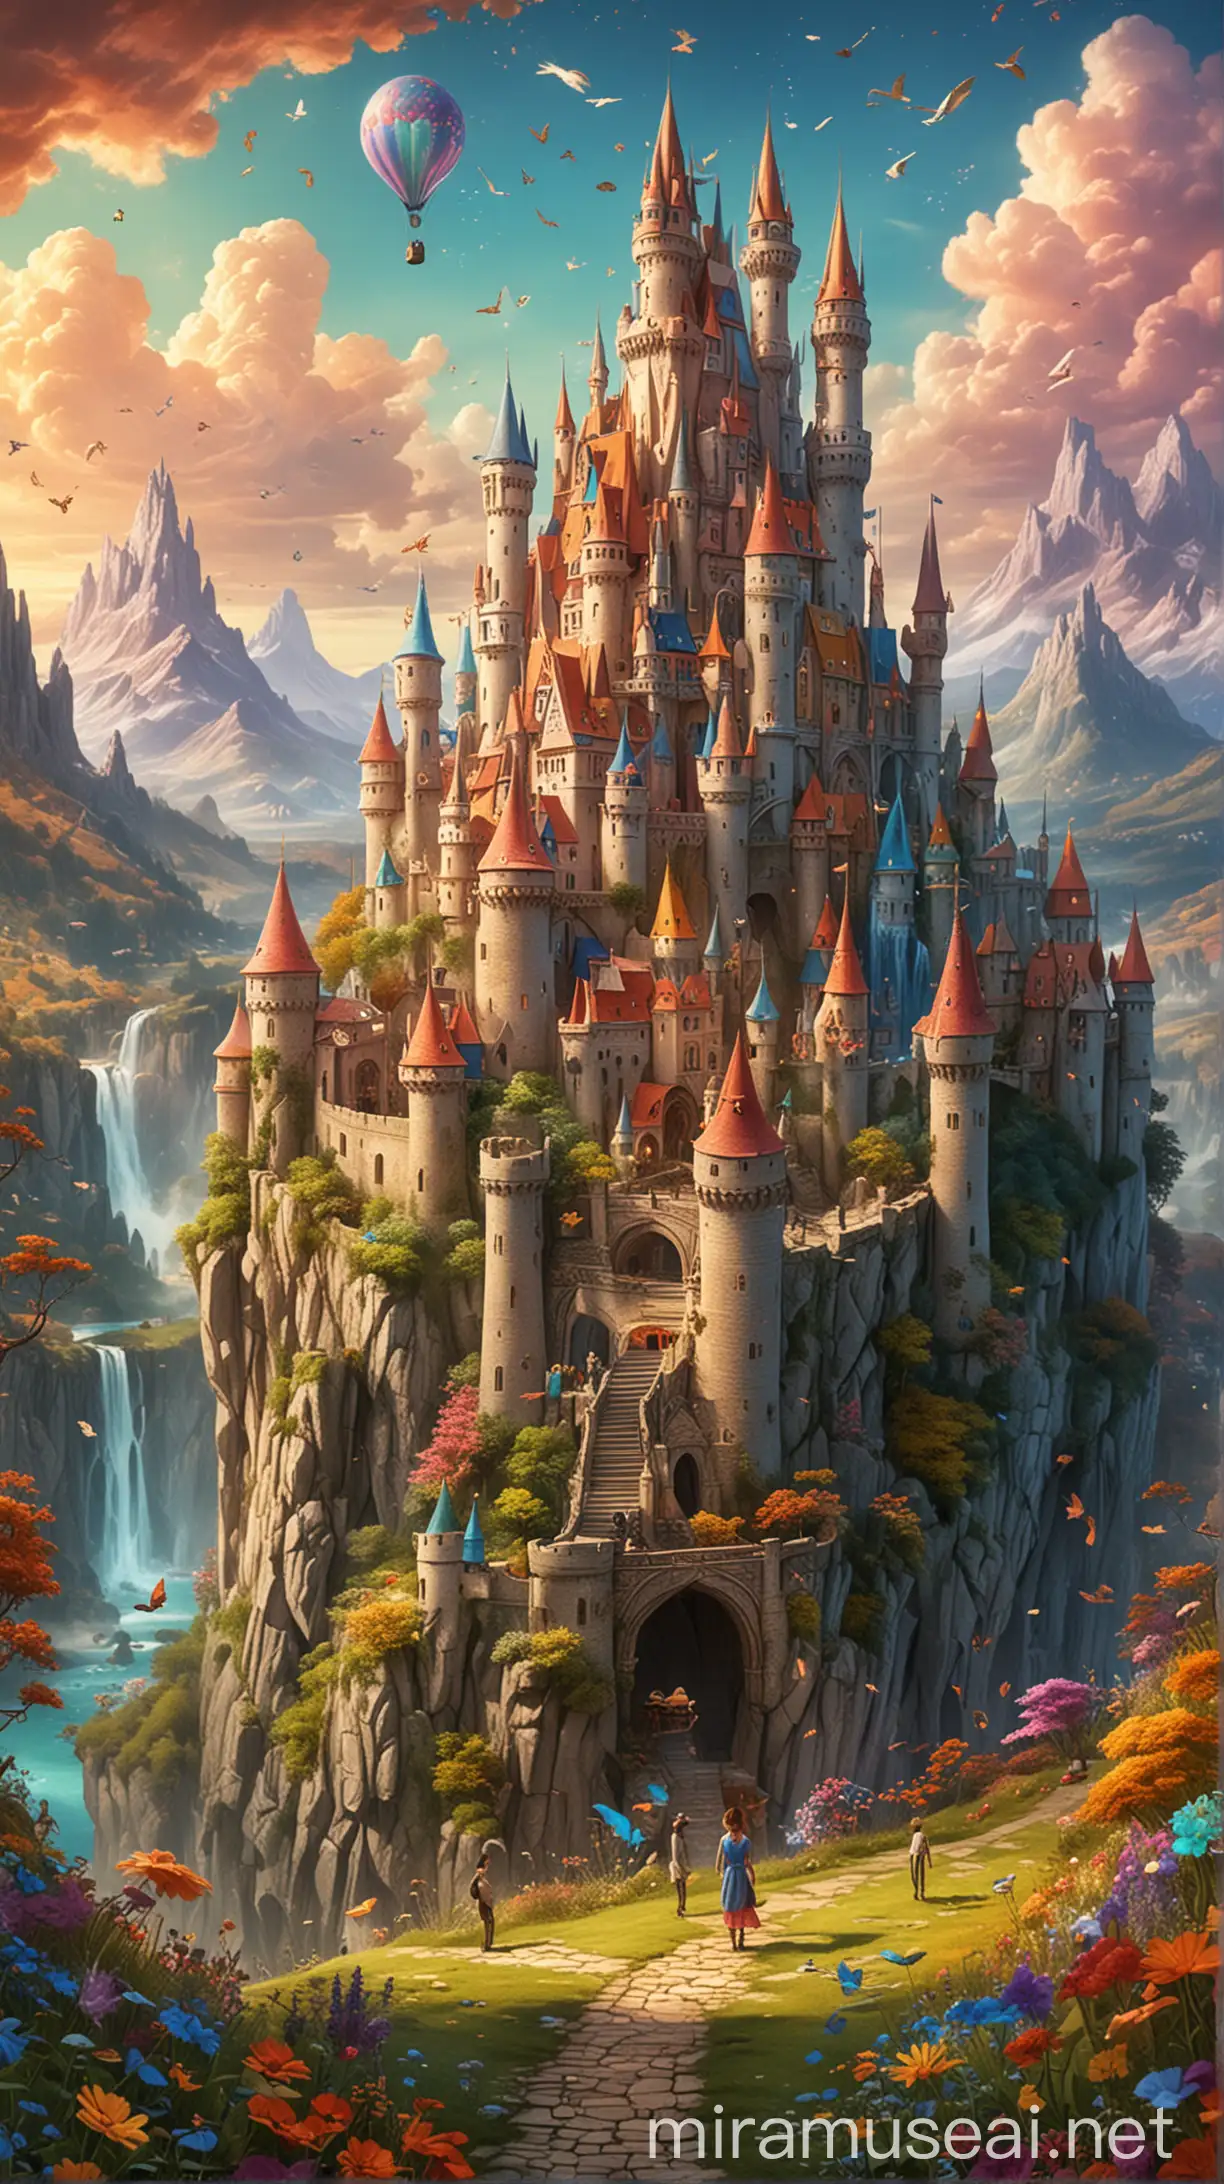 Enchanting Wonderland A Colorful Fantasy World for Kids